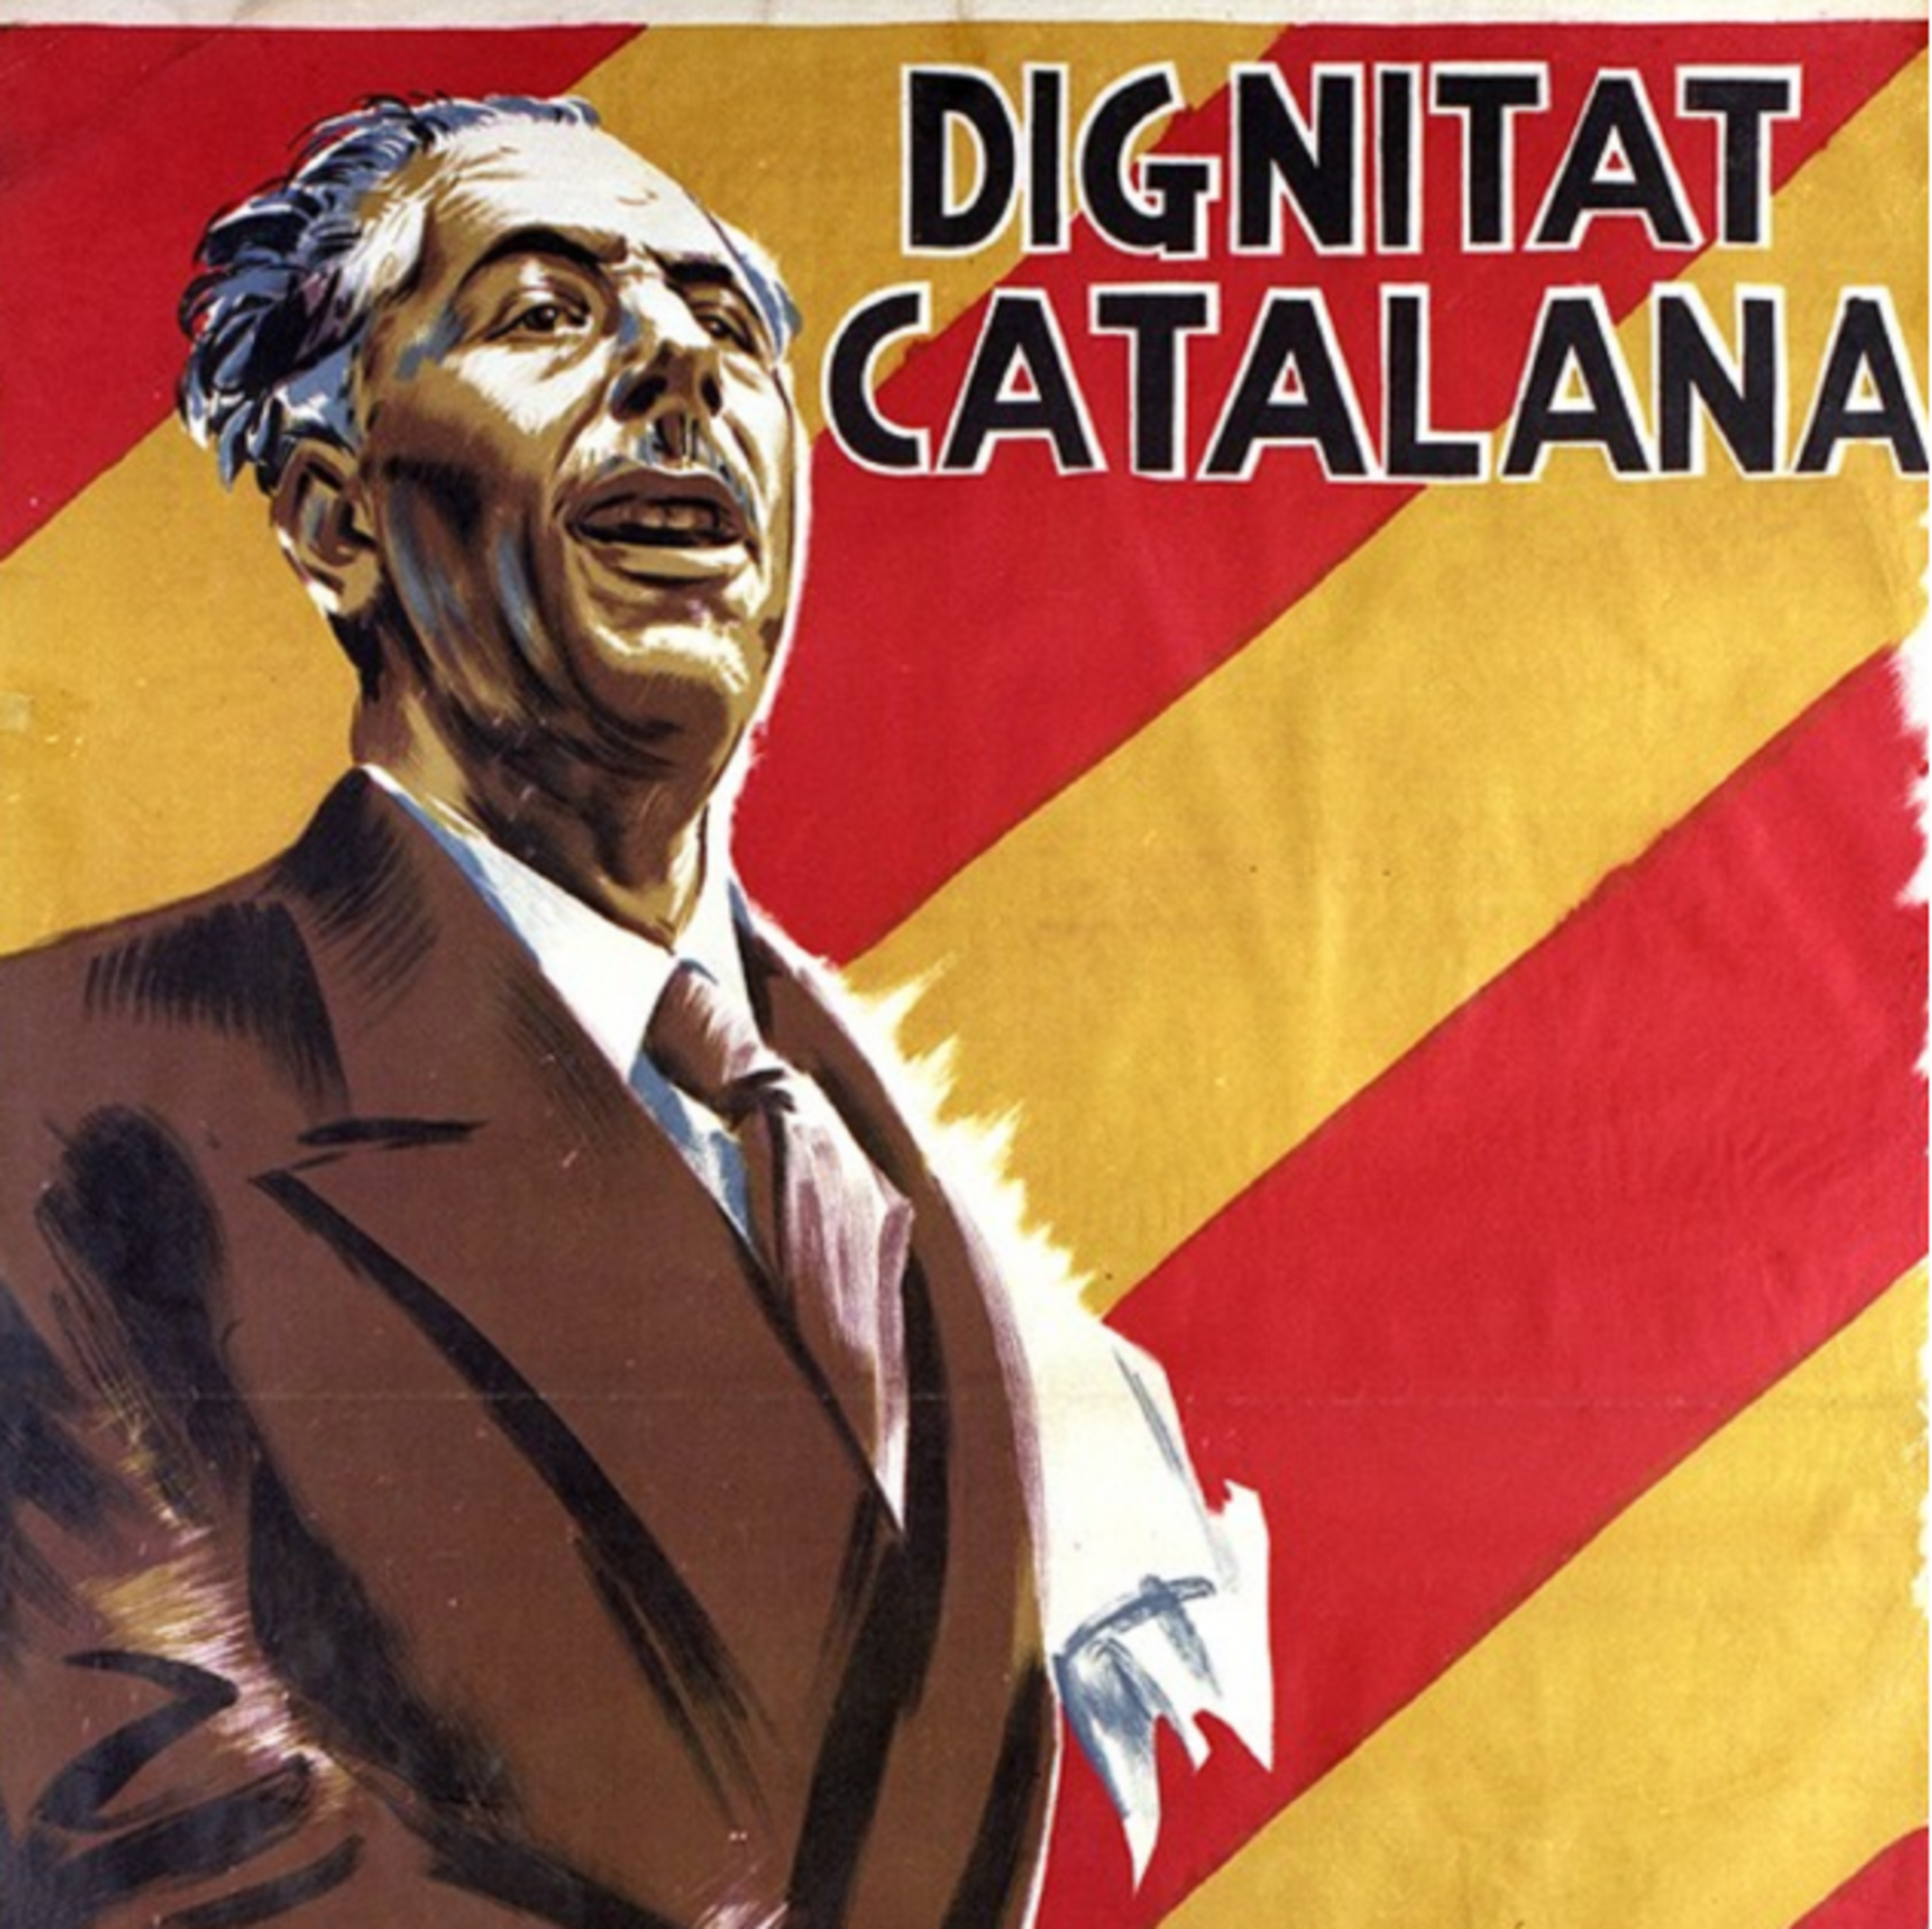 Se convocan las elecciones que conducirían a la amnistía del Govern de Catalunya